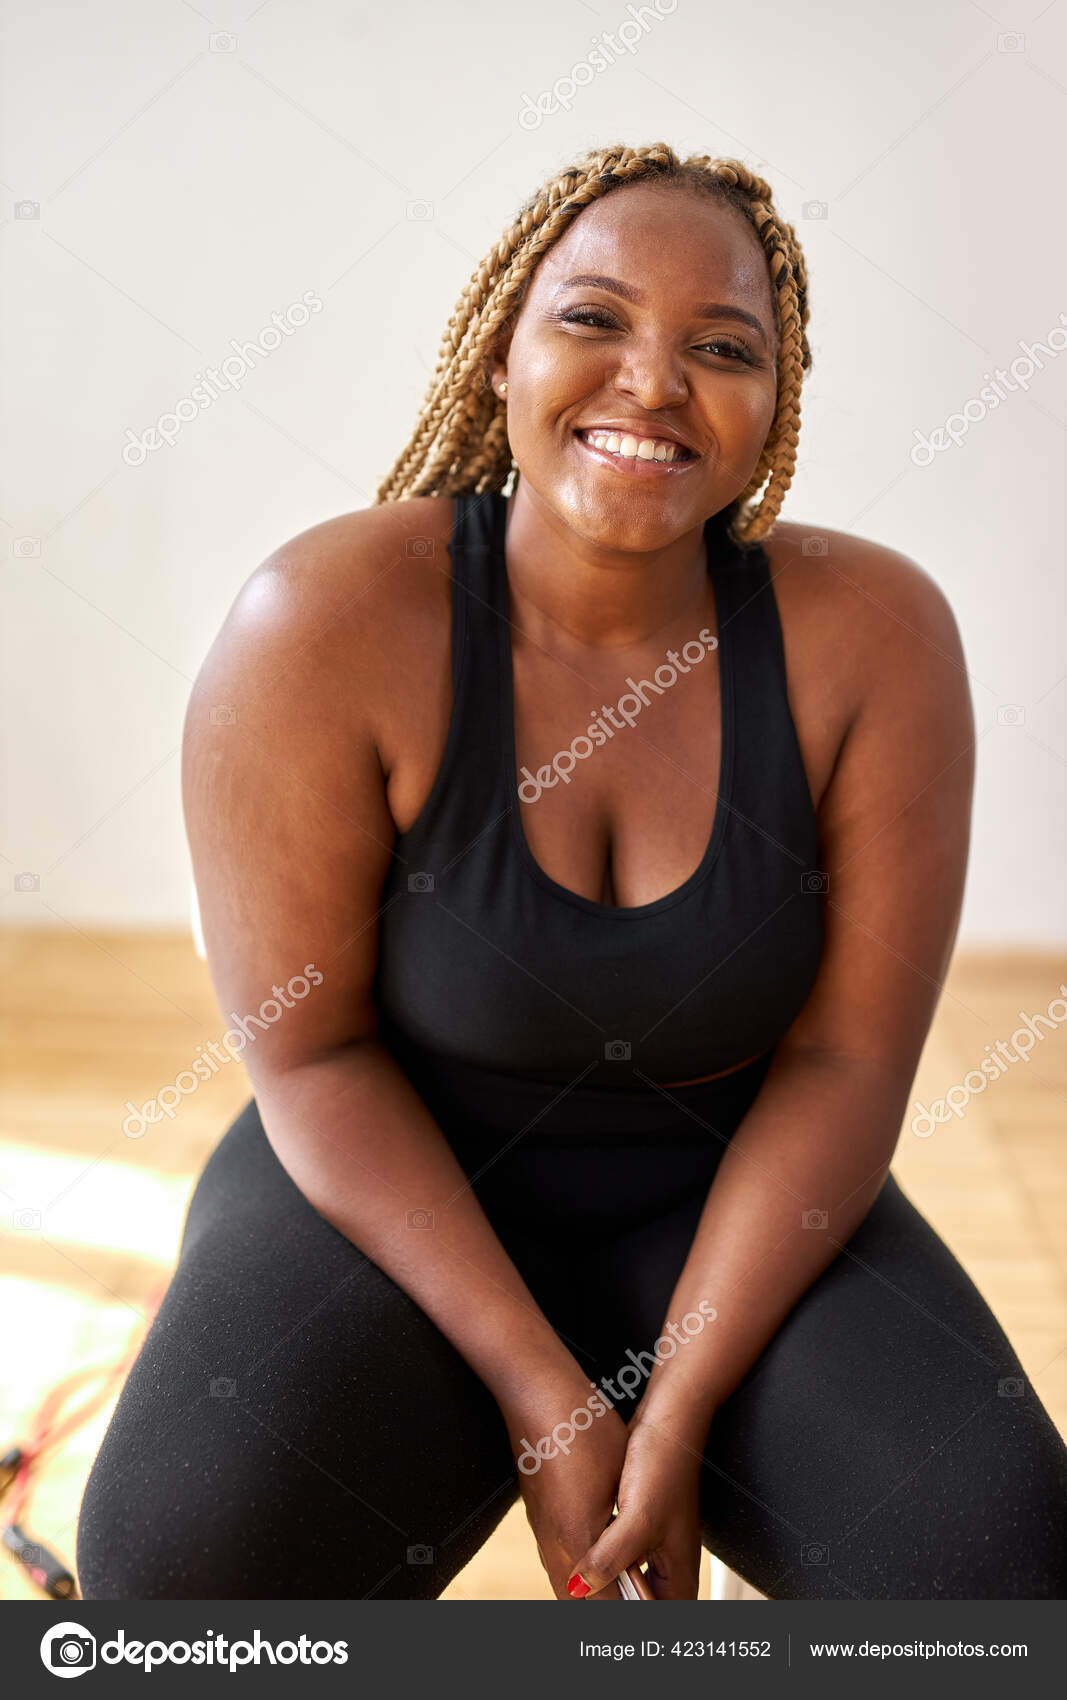 Regordeta, además de tamaño afroamericano mujer en ropa deportiva sentarse mirando a la cámara: fotografía stock © romanchazov27 #423141552 Depositphotos